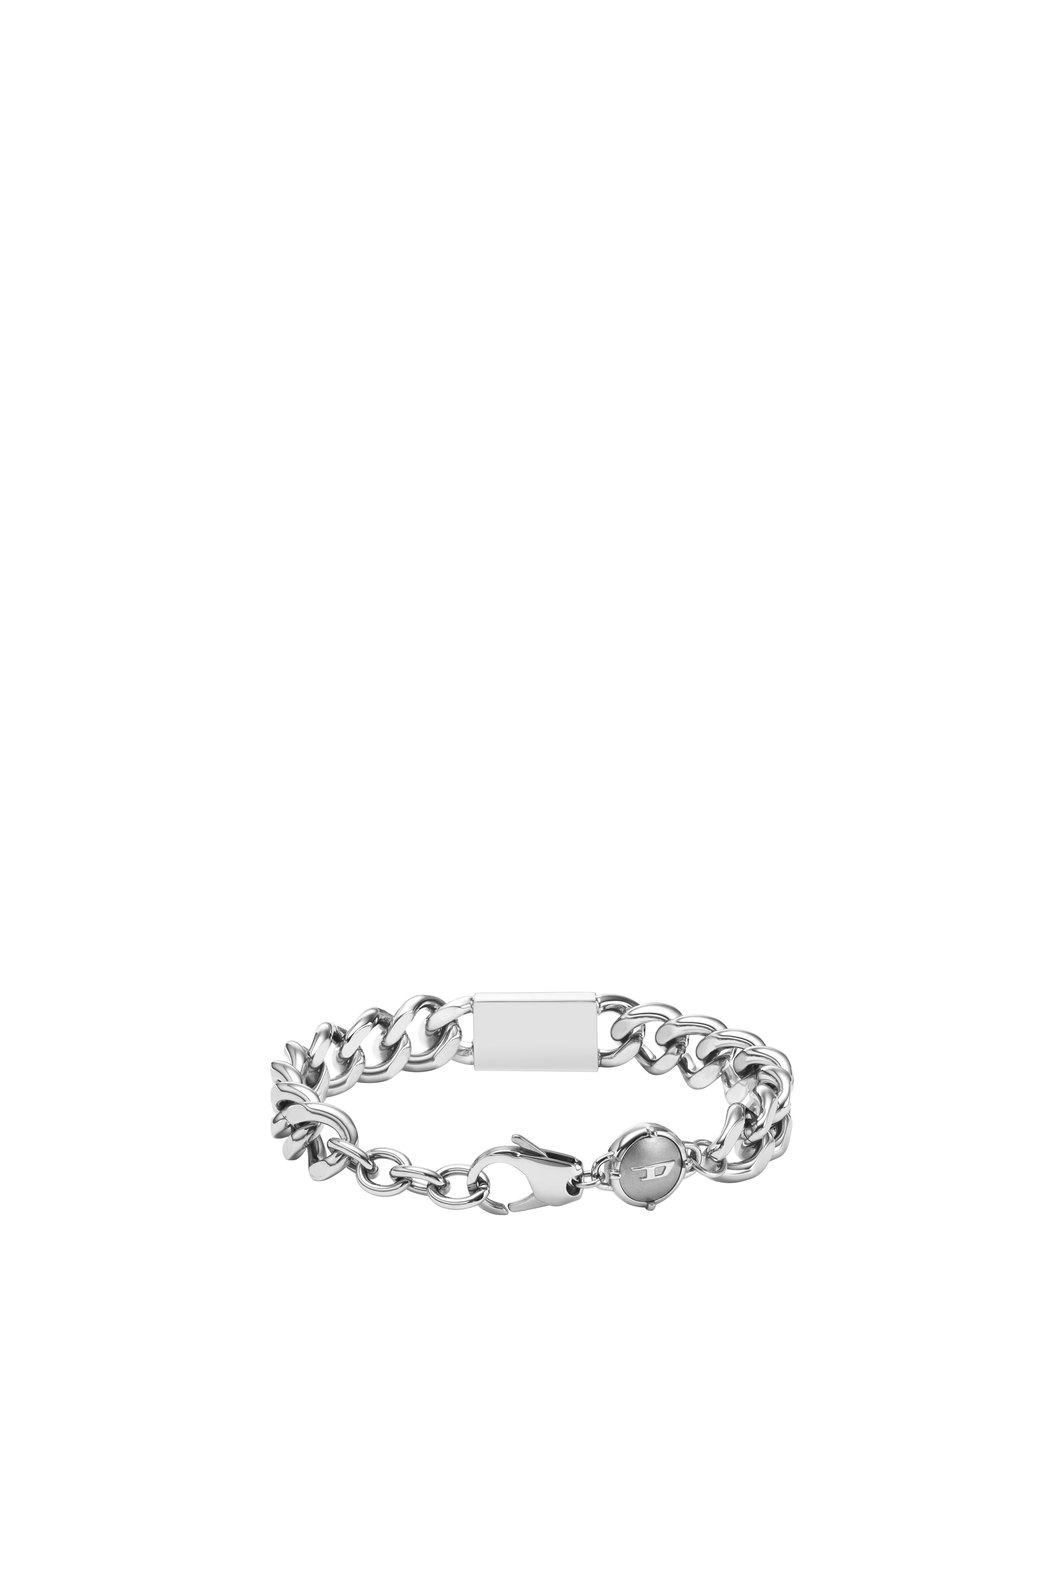 Stainless Steel Logo Chain Bracelet